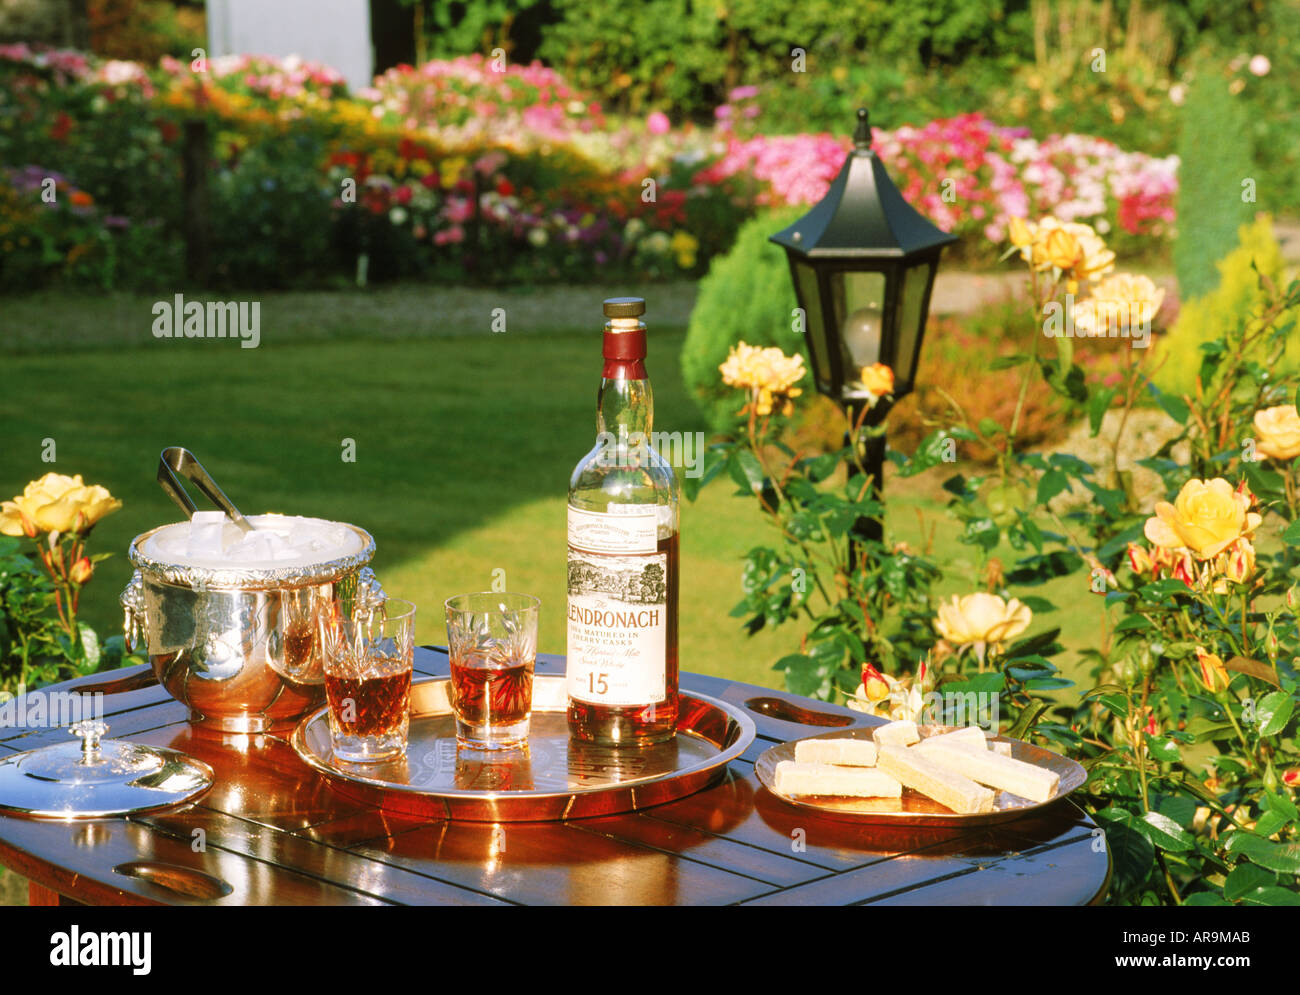 15 Jahre alten single Malt Whisky in den Gärten von Glendronach Destillerie in Schottland Stockfoto